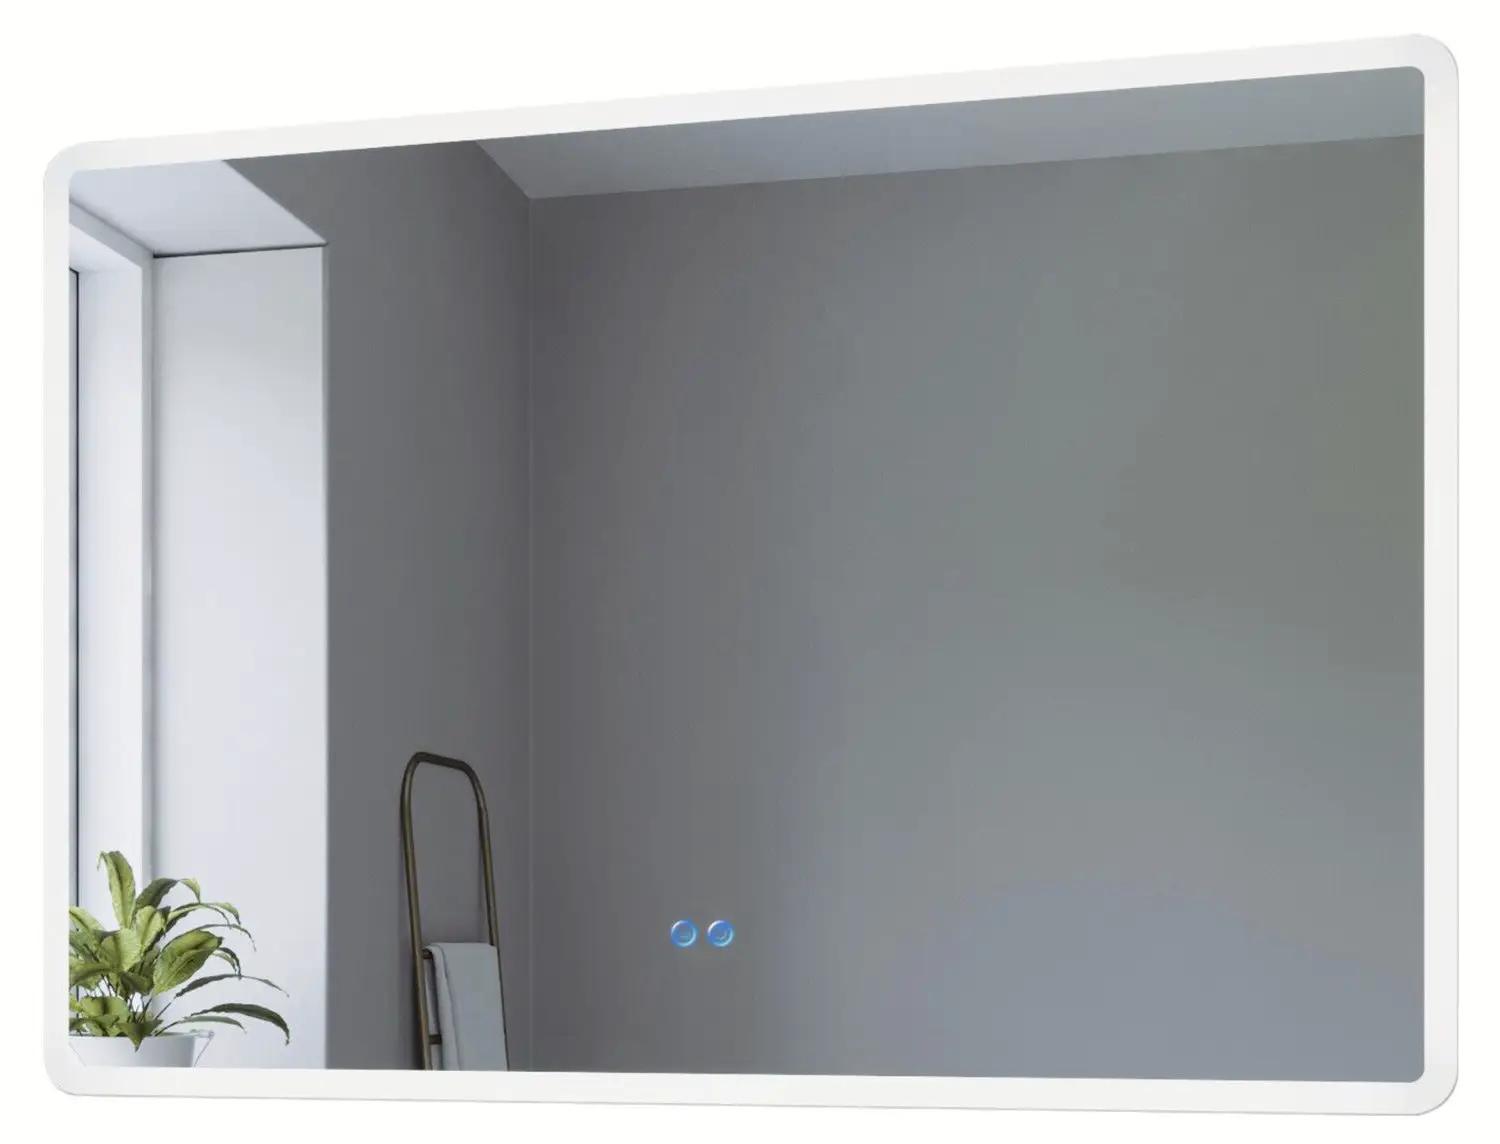 LED Badspiegel Wandspiegel Beleuchtung